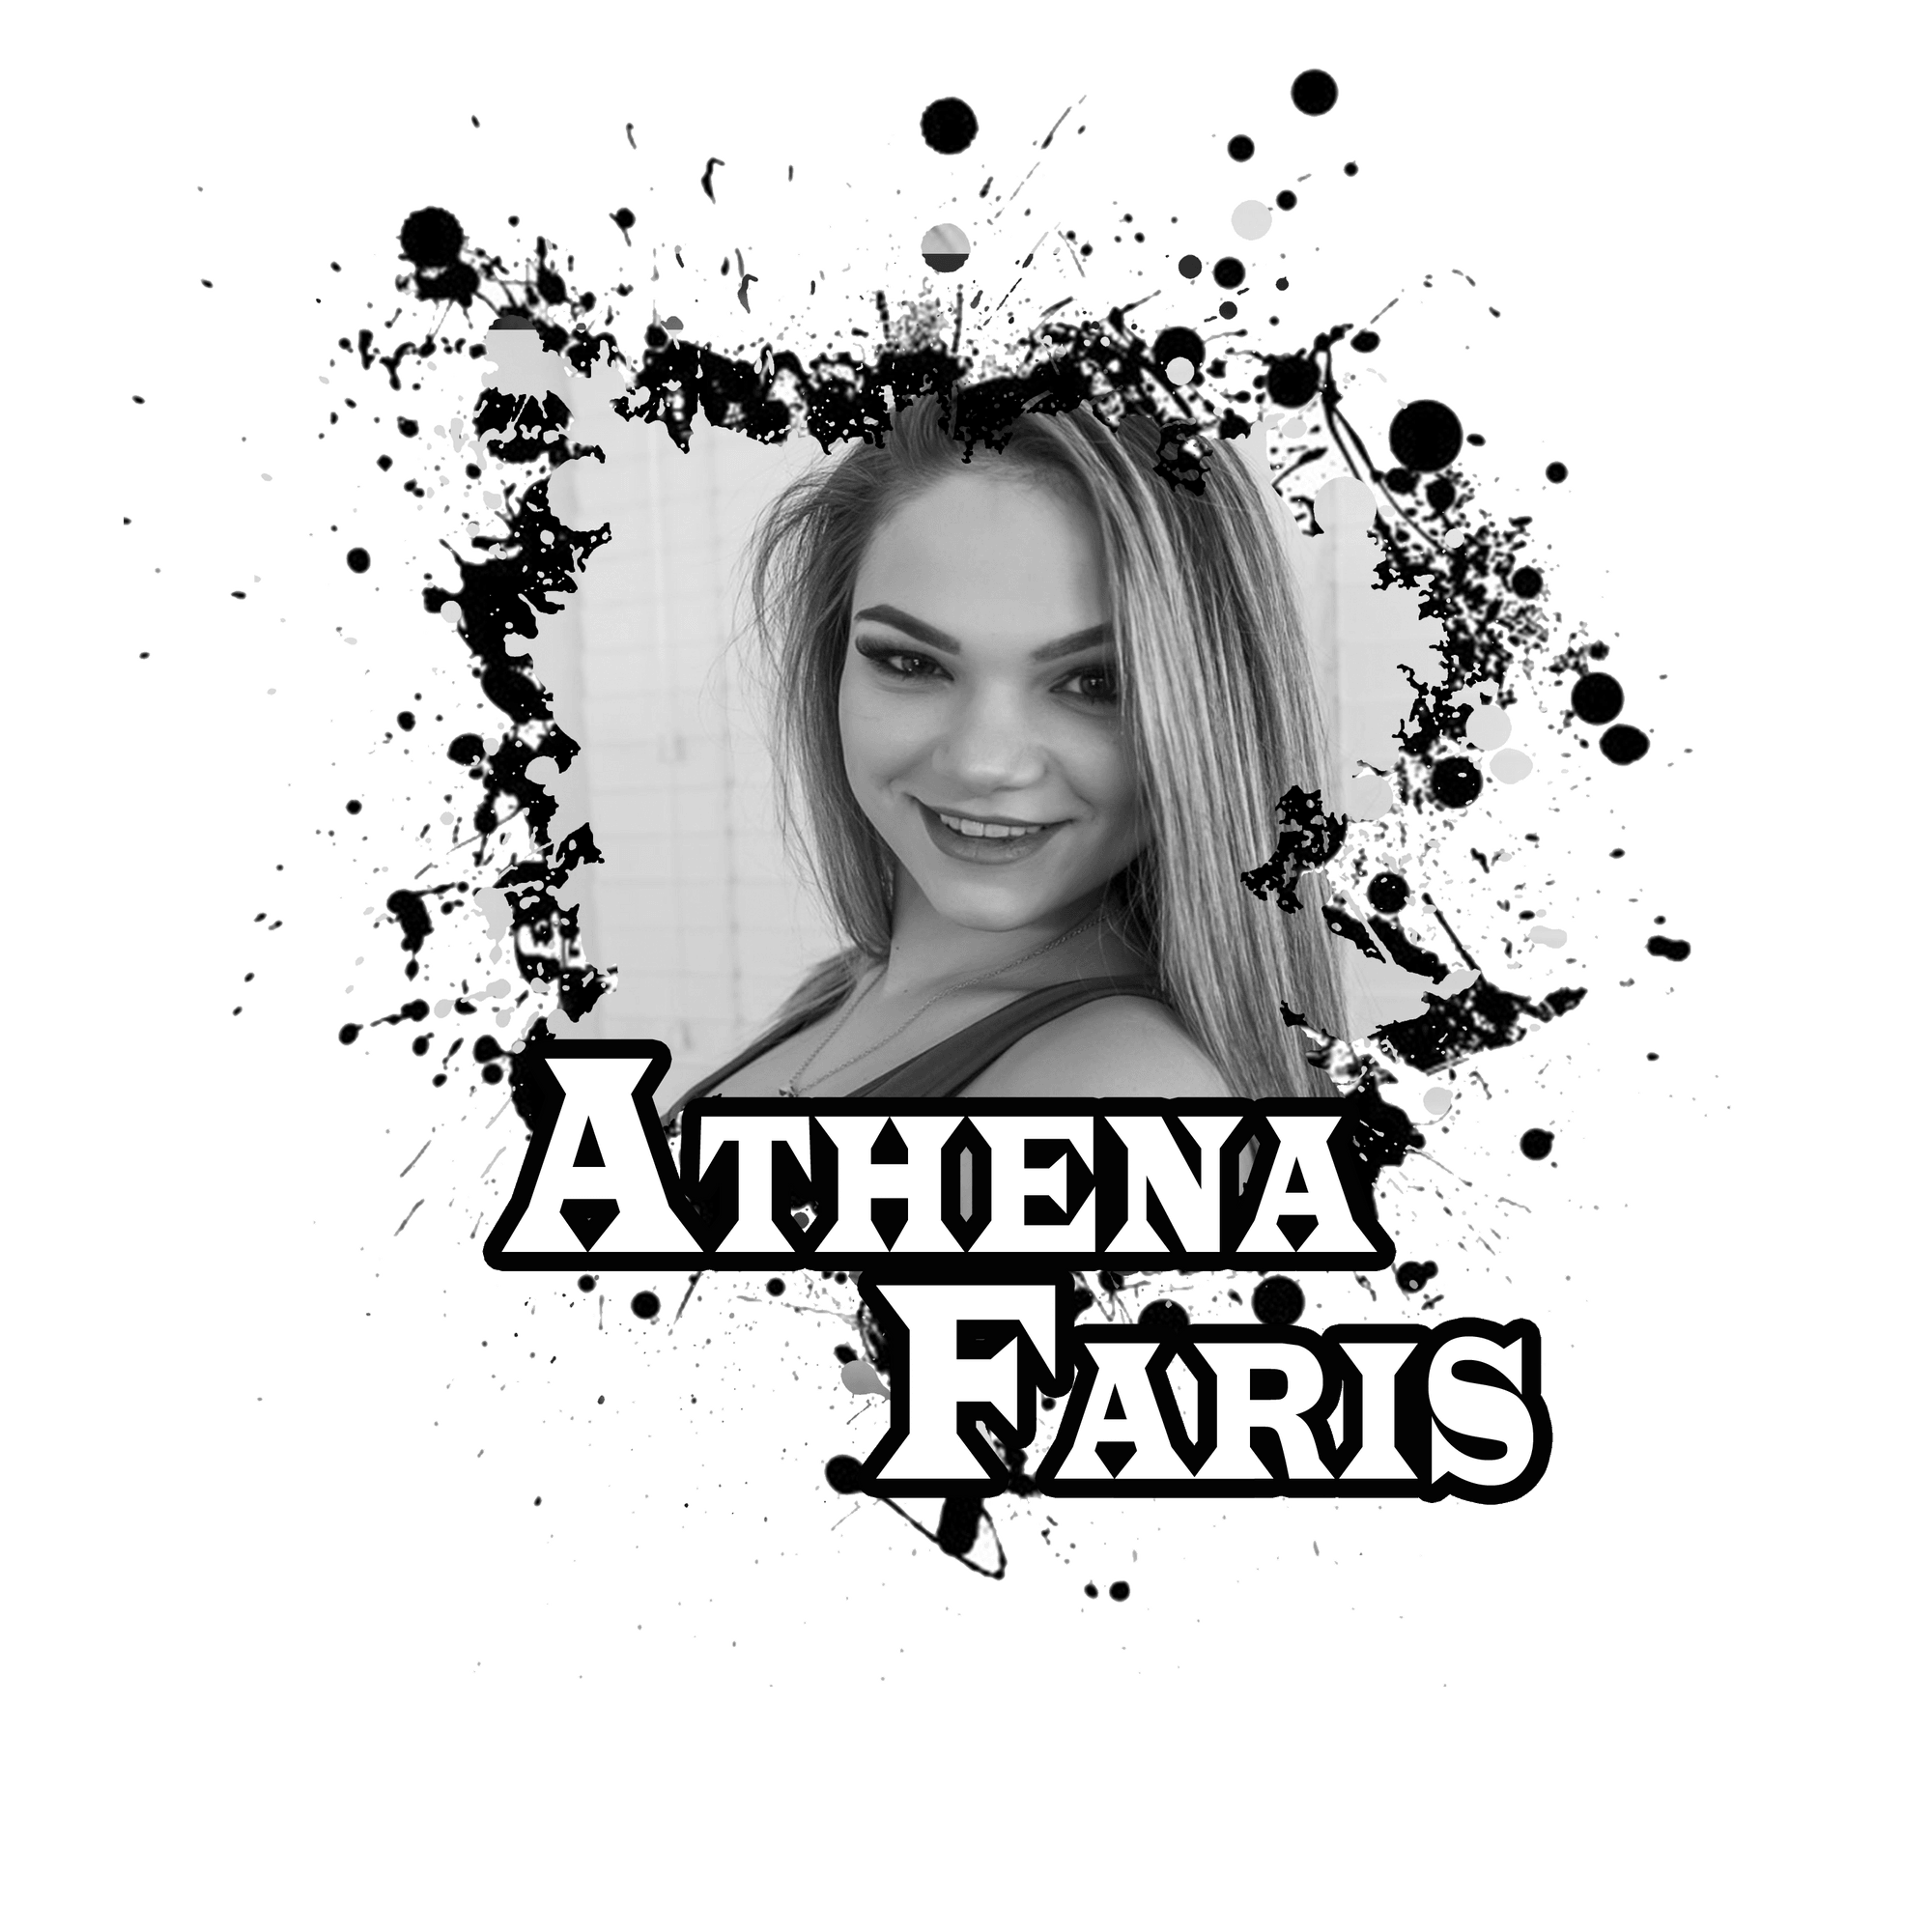 Athena Faris Favorite Actresses 1 Opensea